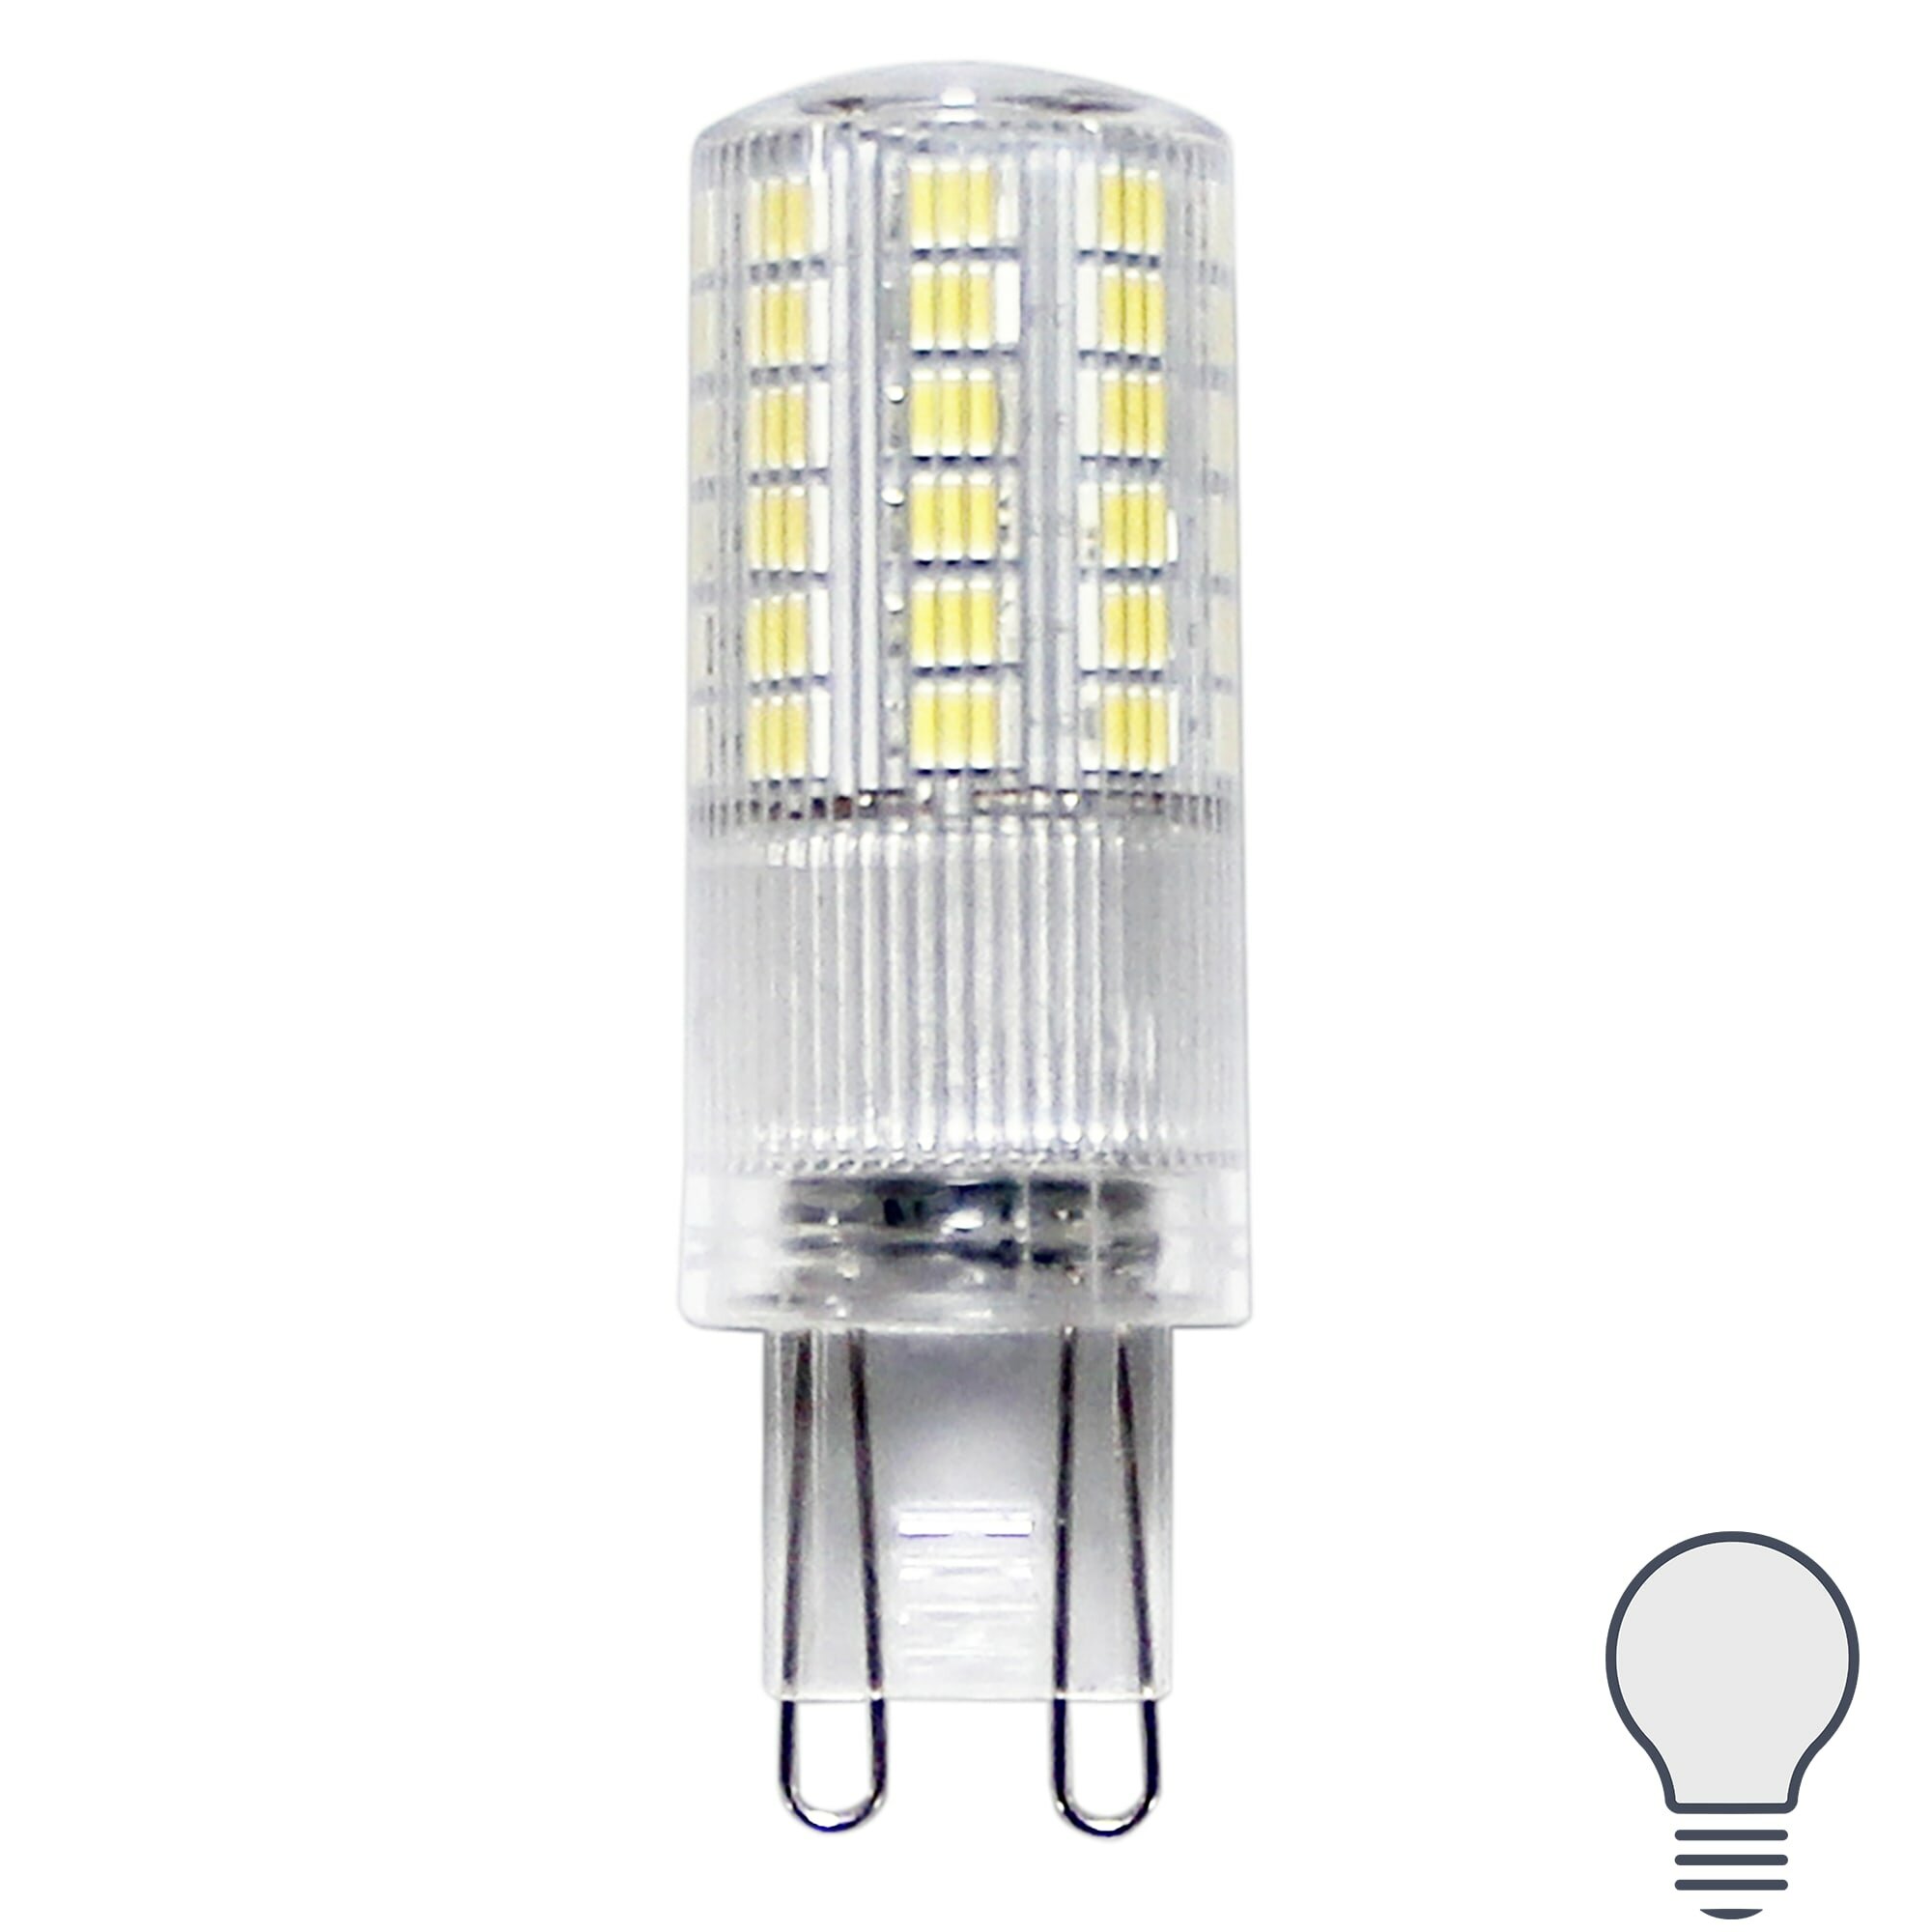 Лампа светодиодная G9 220-240 В 5 Вт капсула прозрачная 600 лм нейтральный белый свет. Набор из 2 шт.